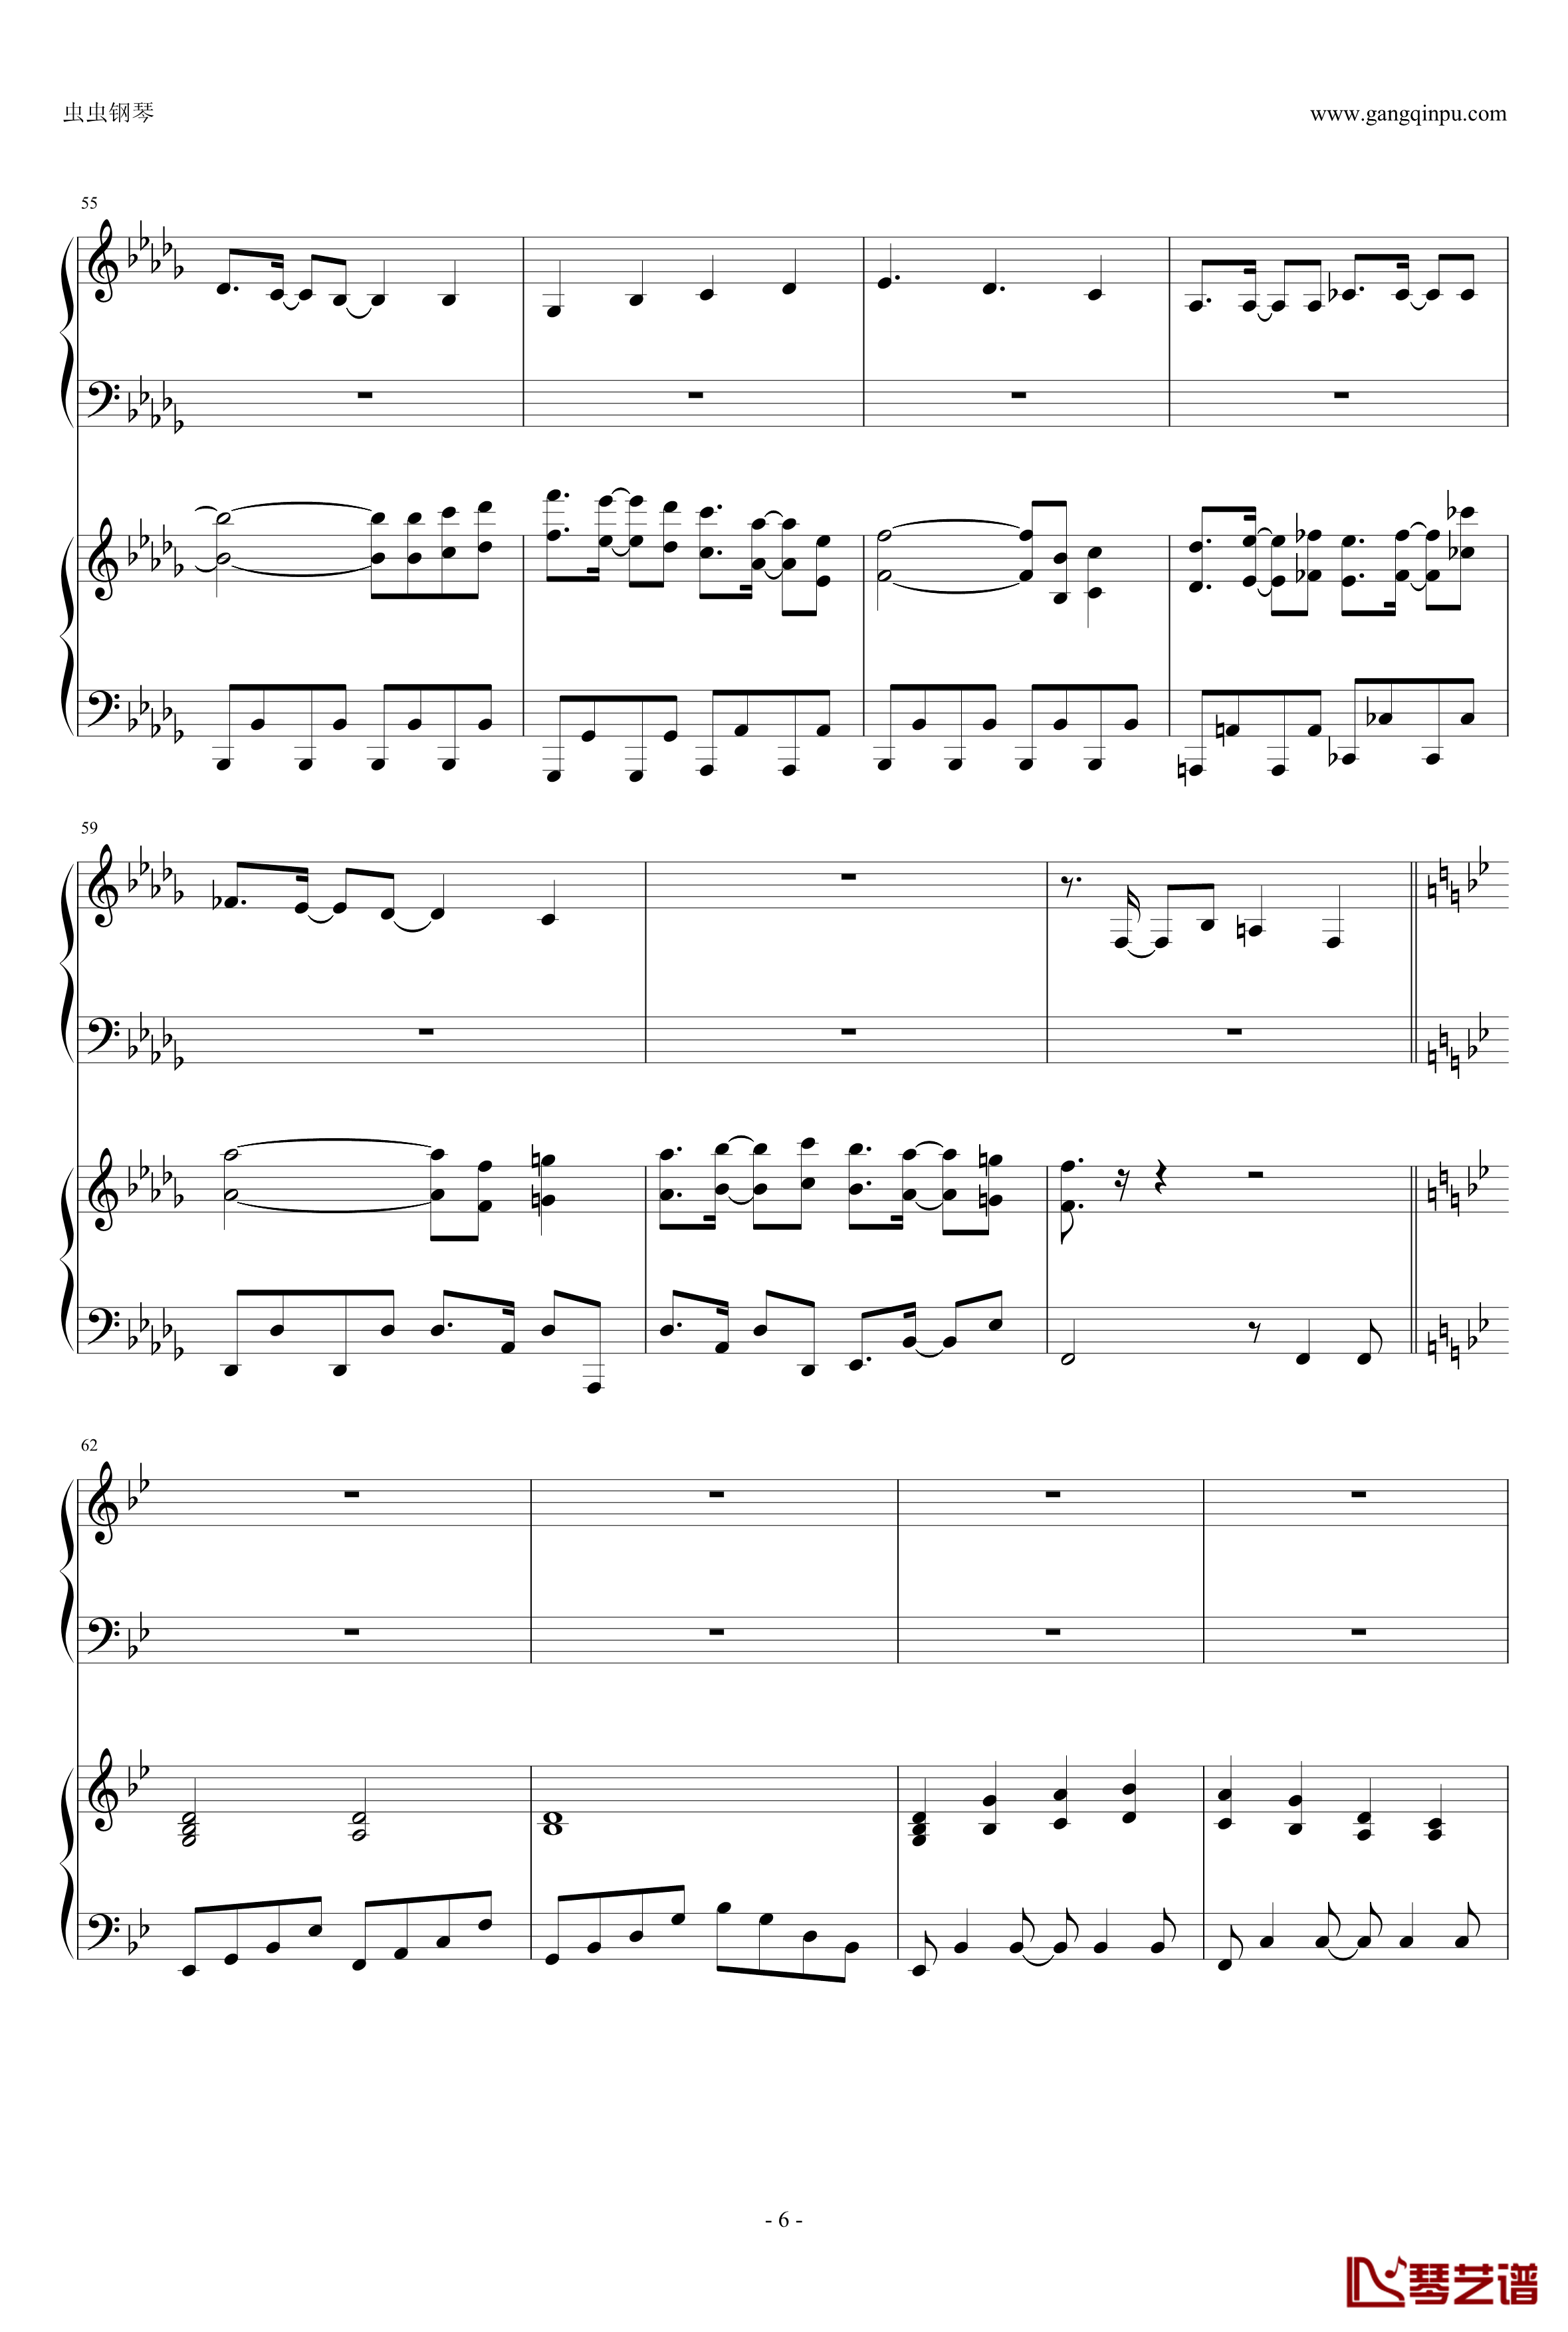 東方連奏曲II Pianoforte钢琴谱-第一部分-东方project6